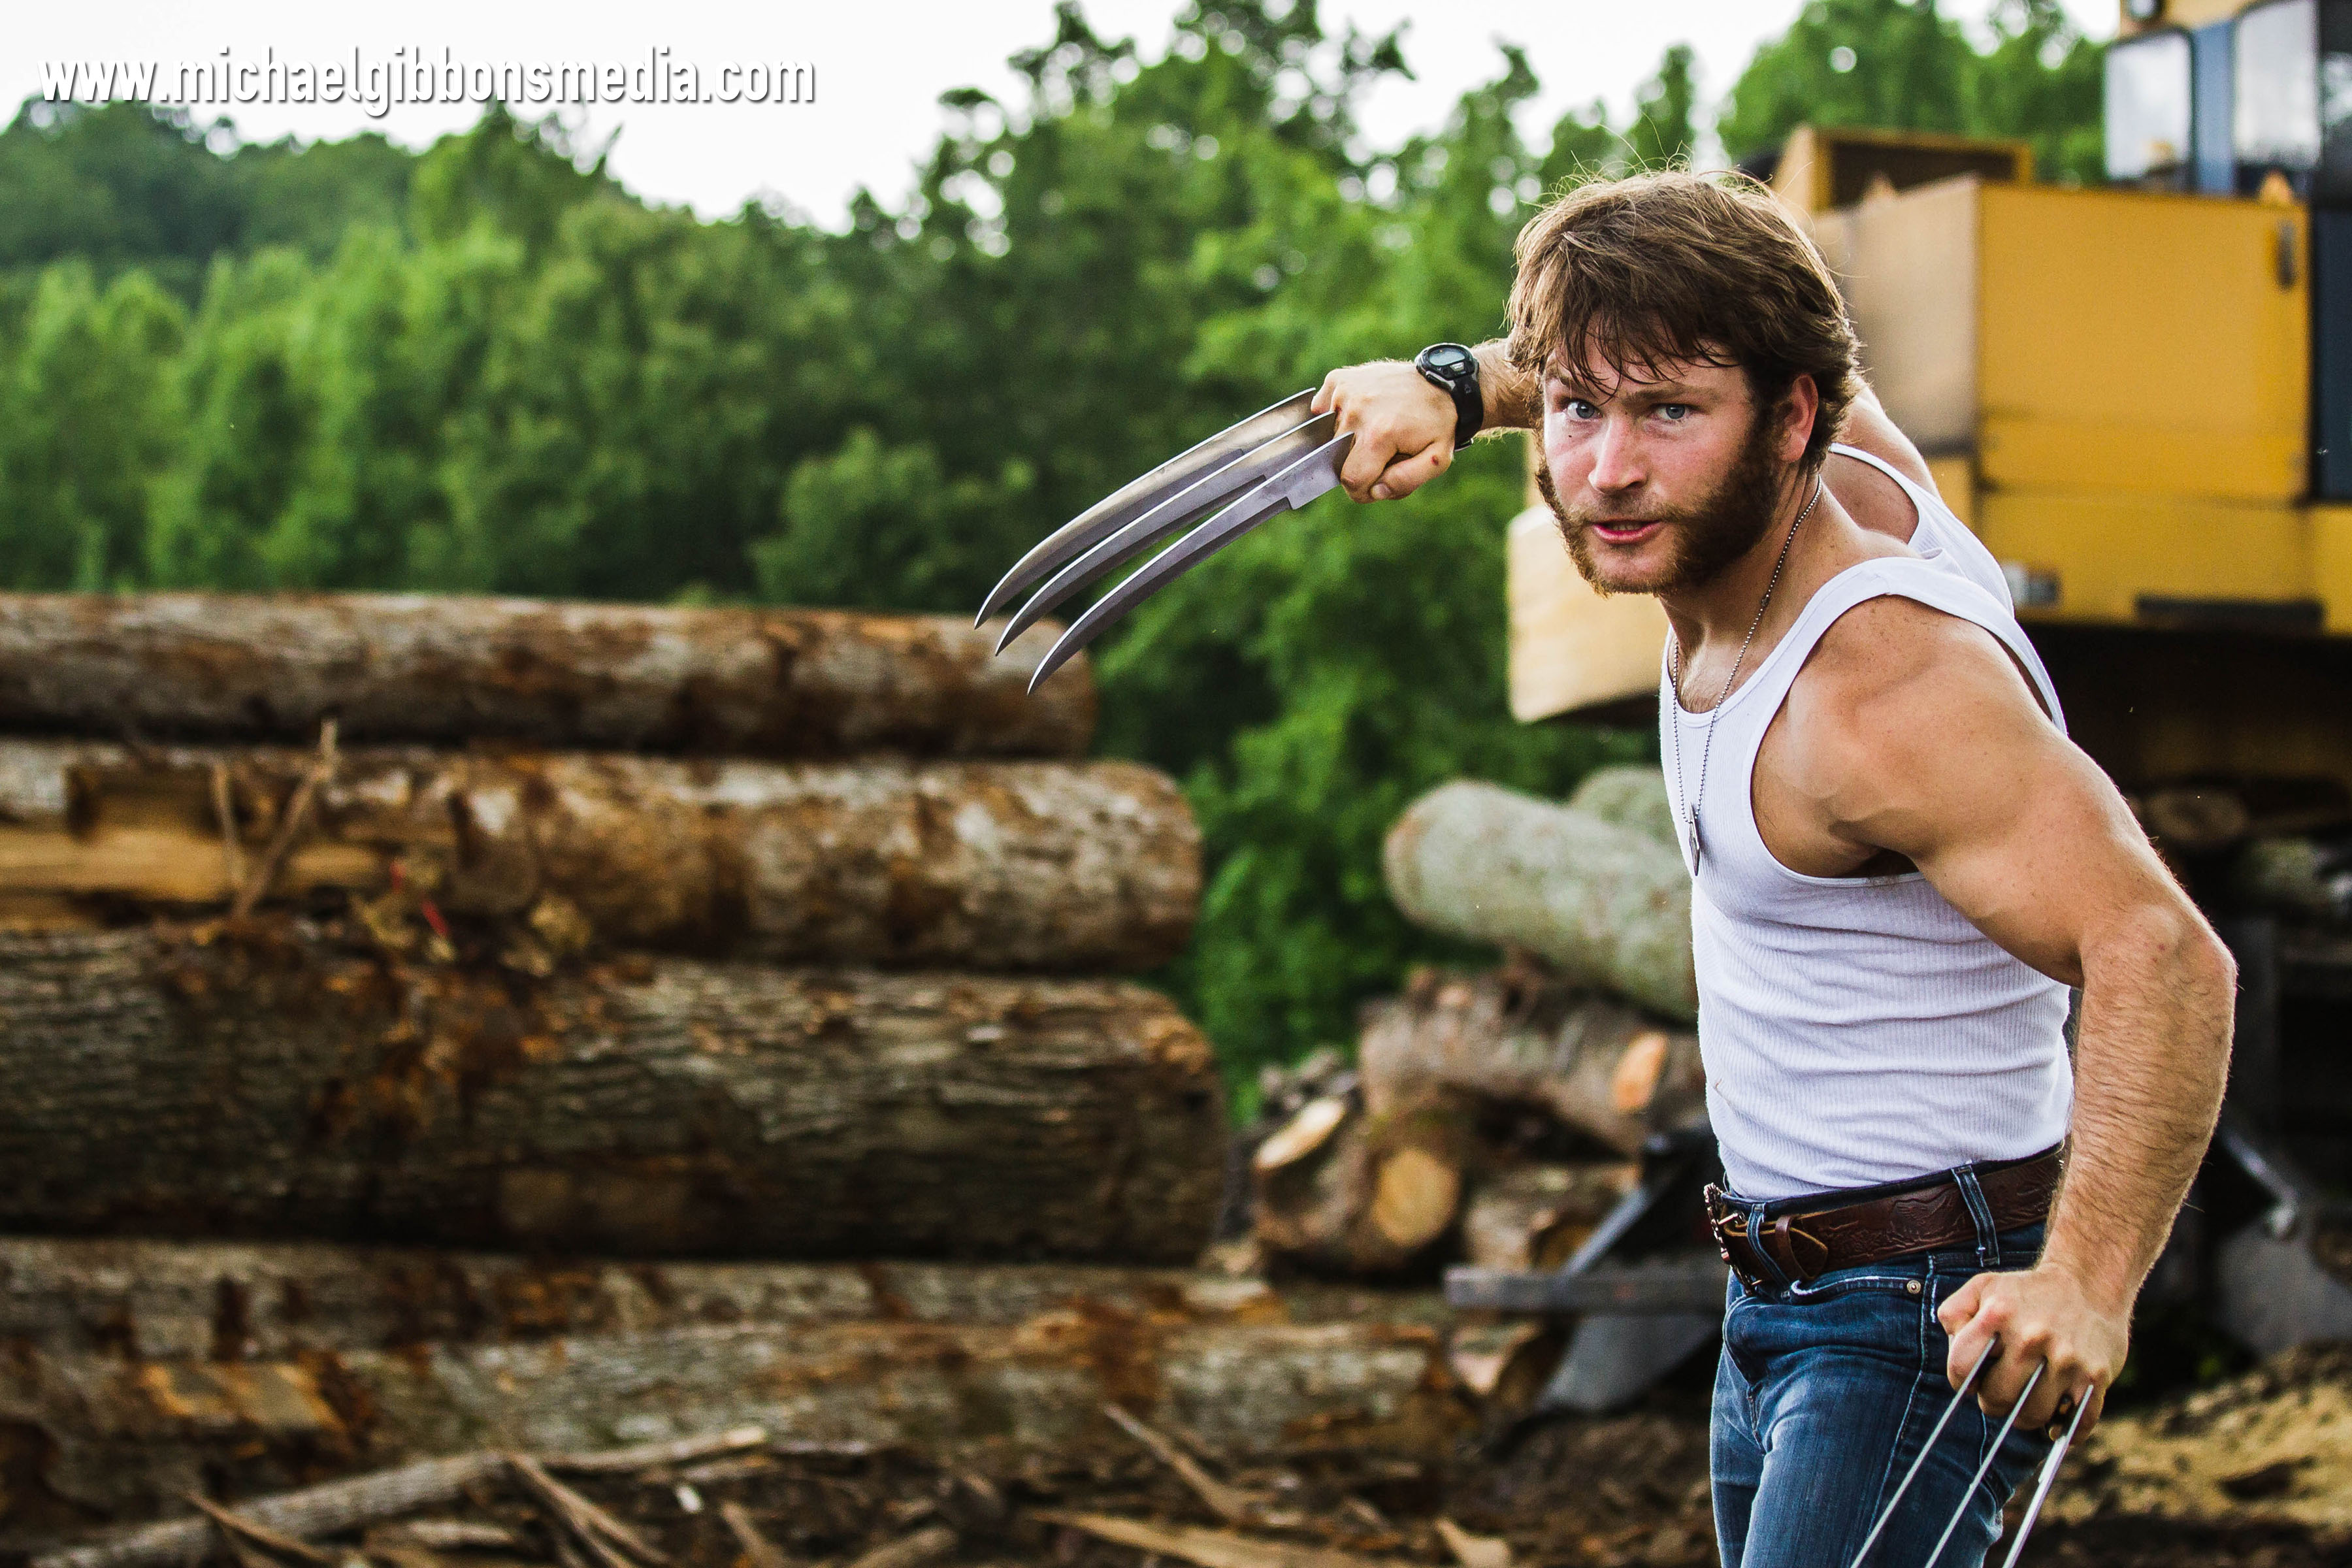 Jamie Costa as Wolverine in SoKrispyMedia's Wolverine Fan Film.